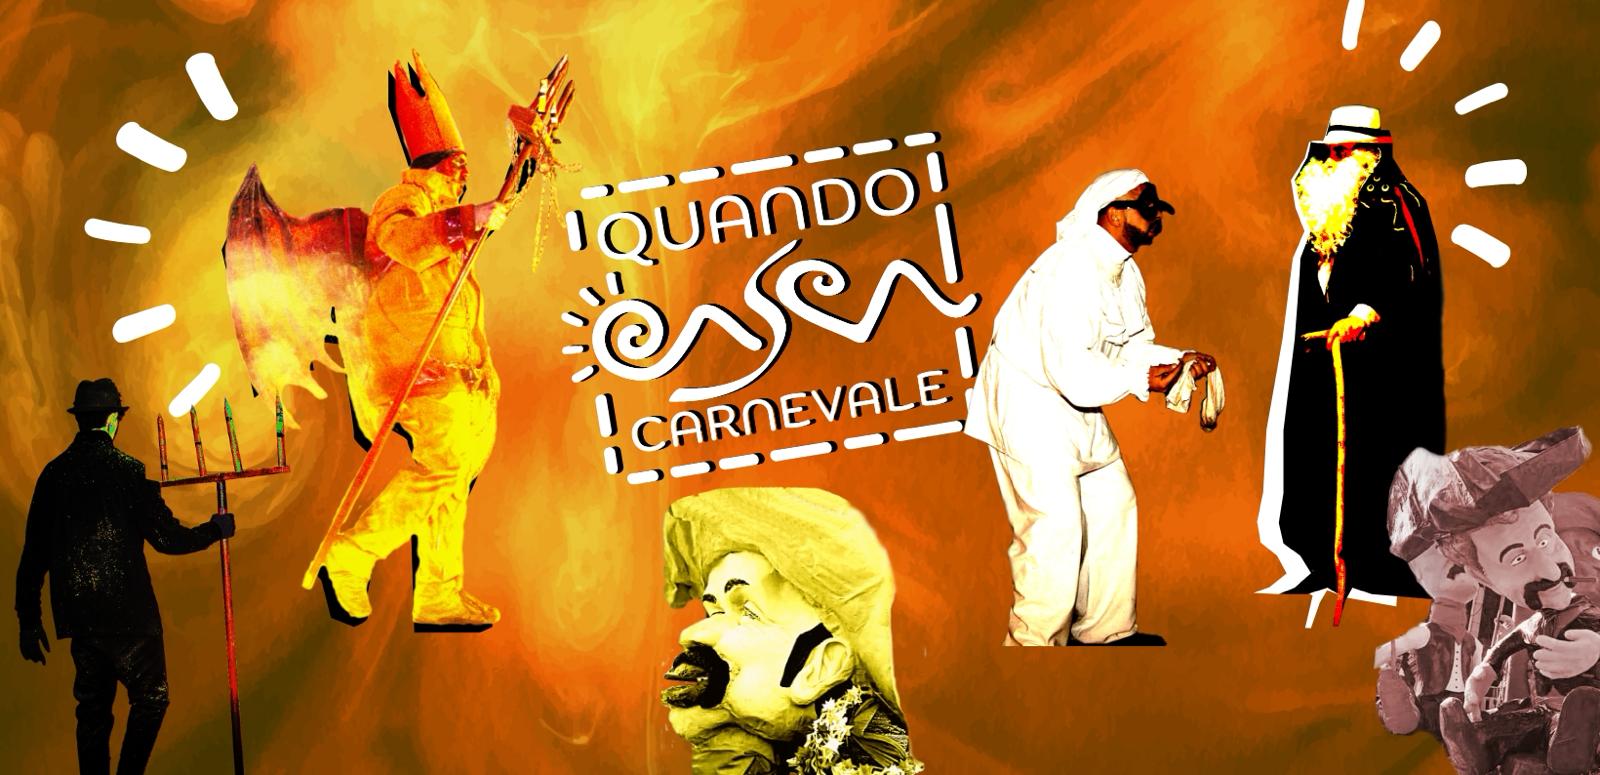 ‘Quando CASCA Carnevale’,il progetto in maschera di 5 comuni sanniti